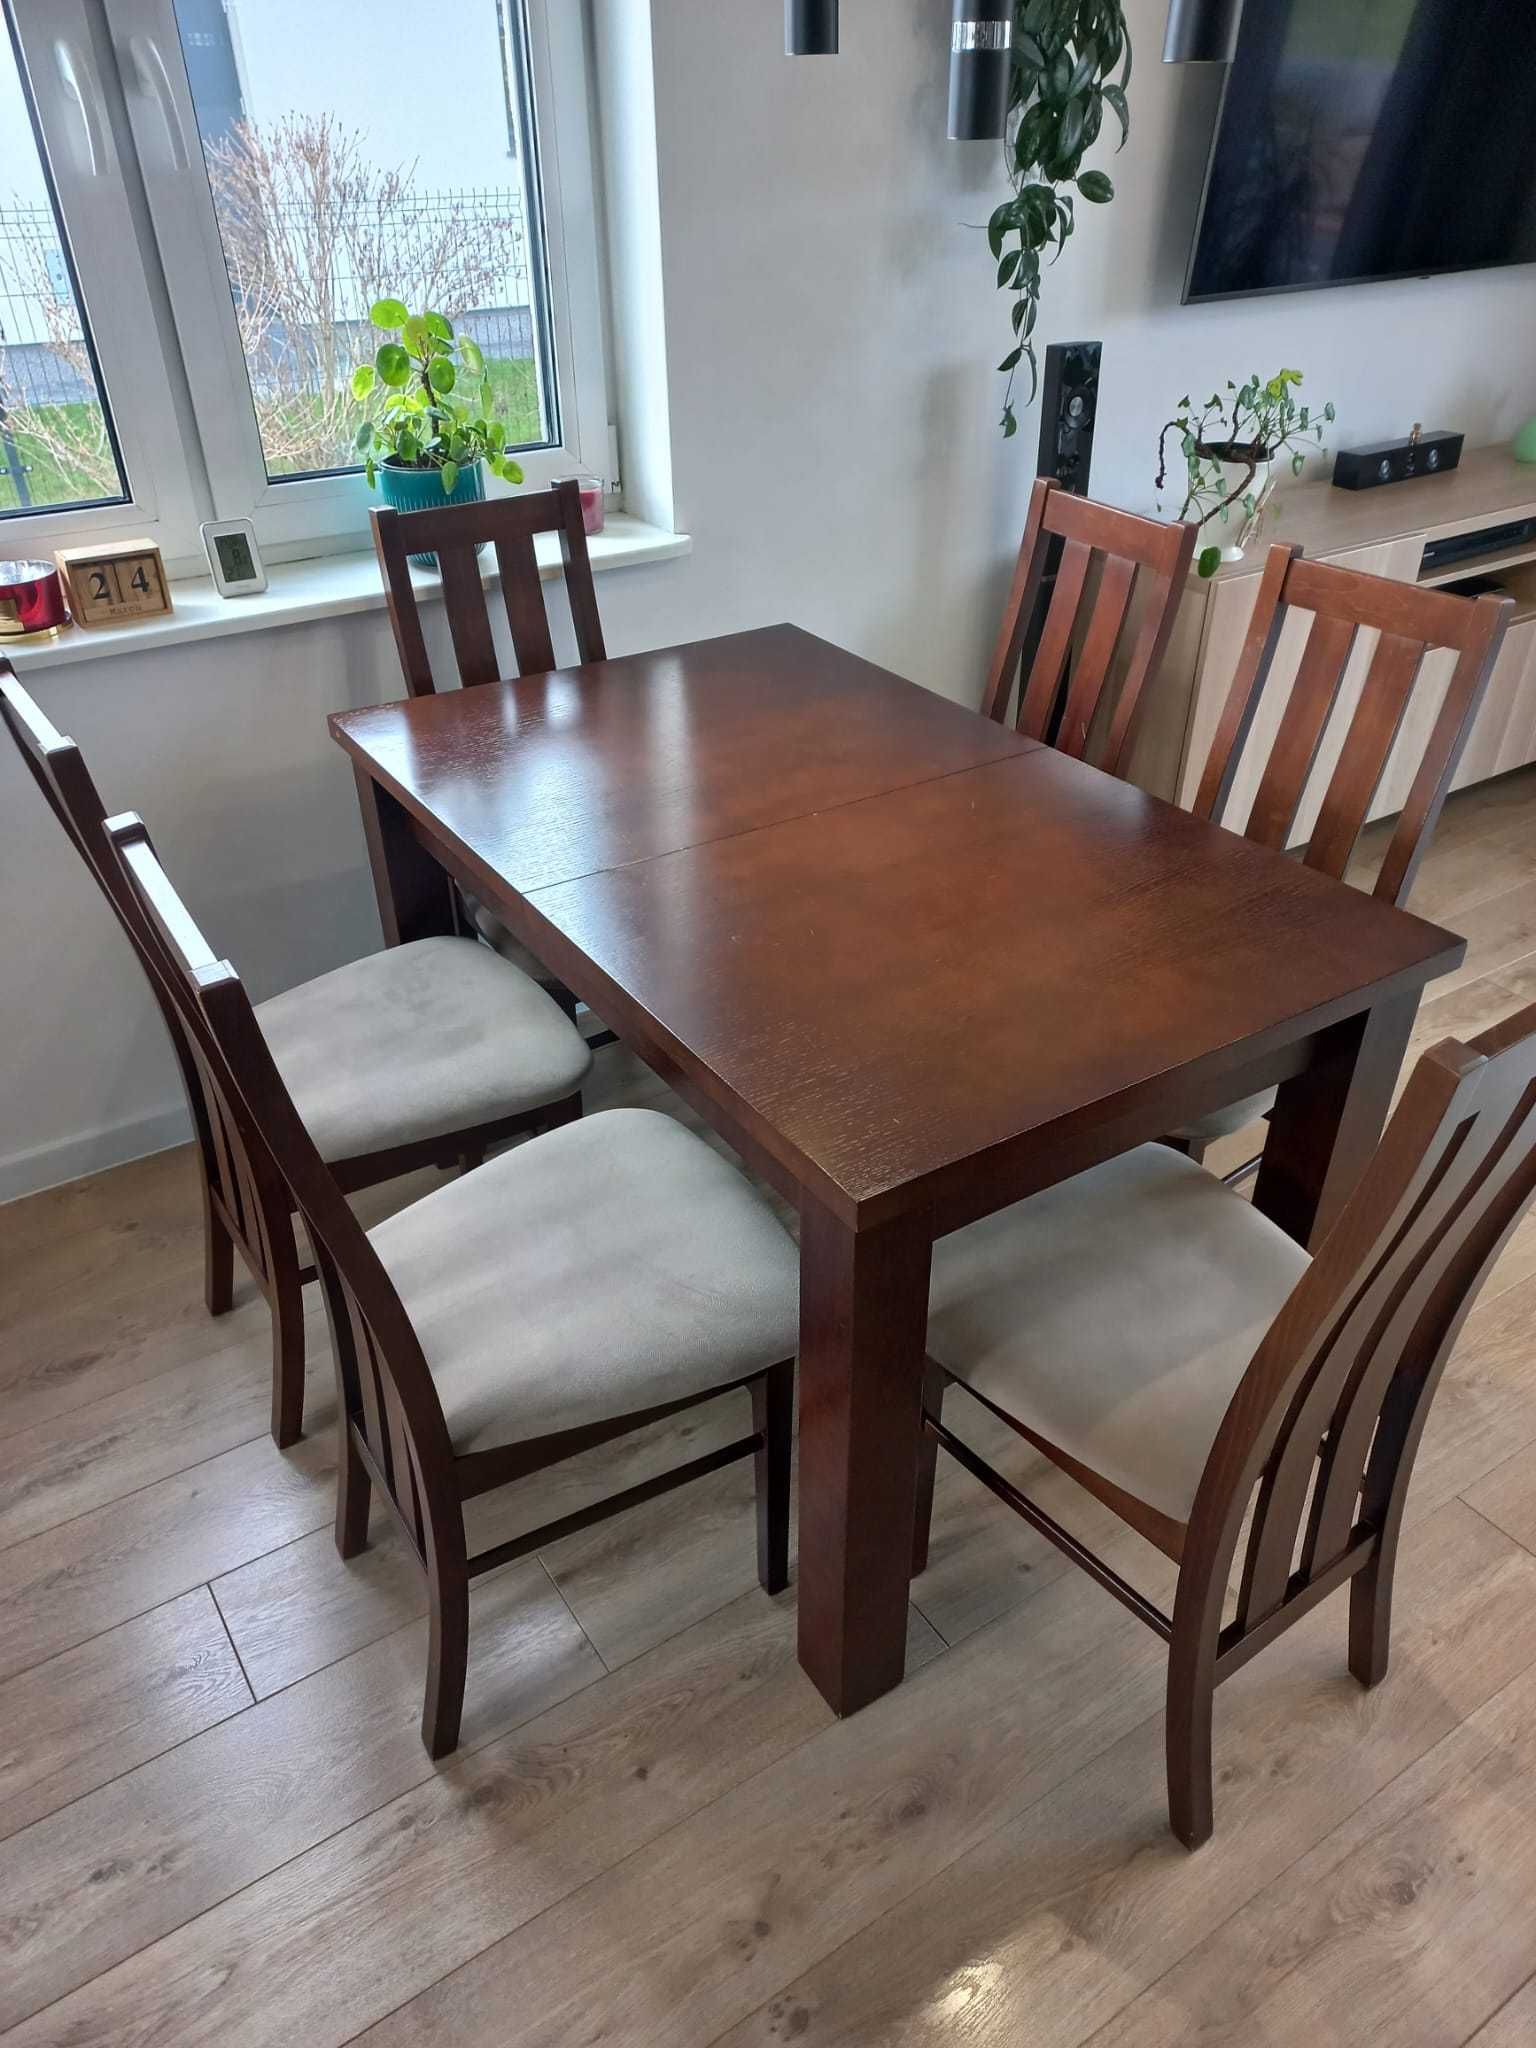 Stół drewniany plus 6 krzeseł